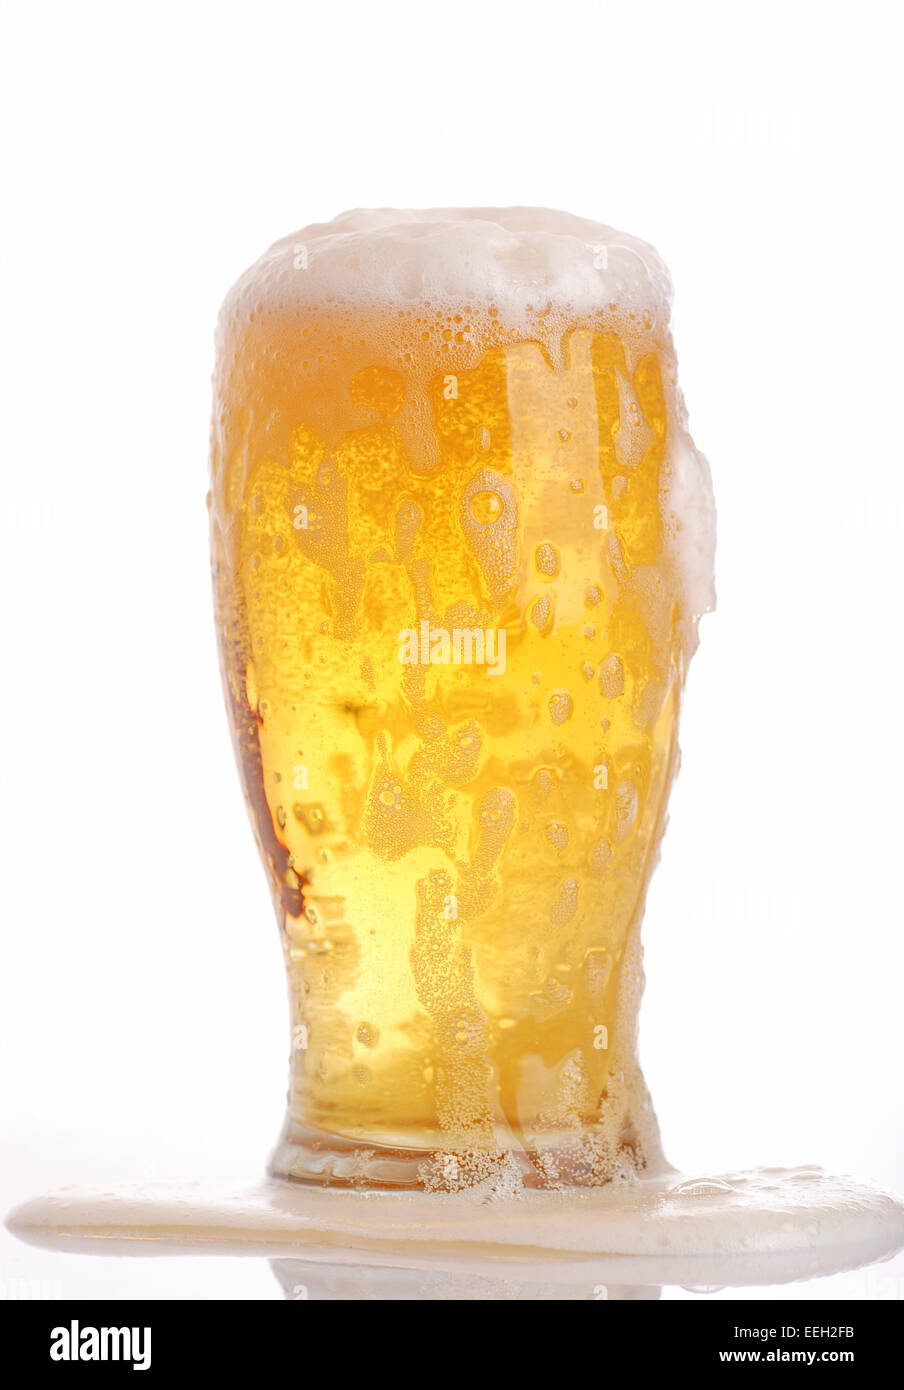 Verre de bière close-up avec espuma Banque D'Images